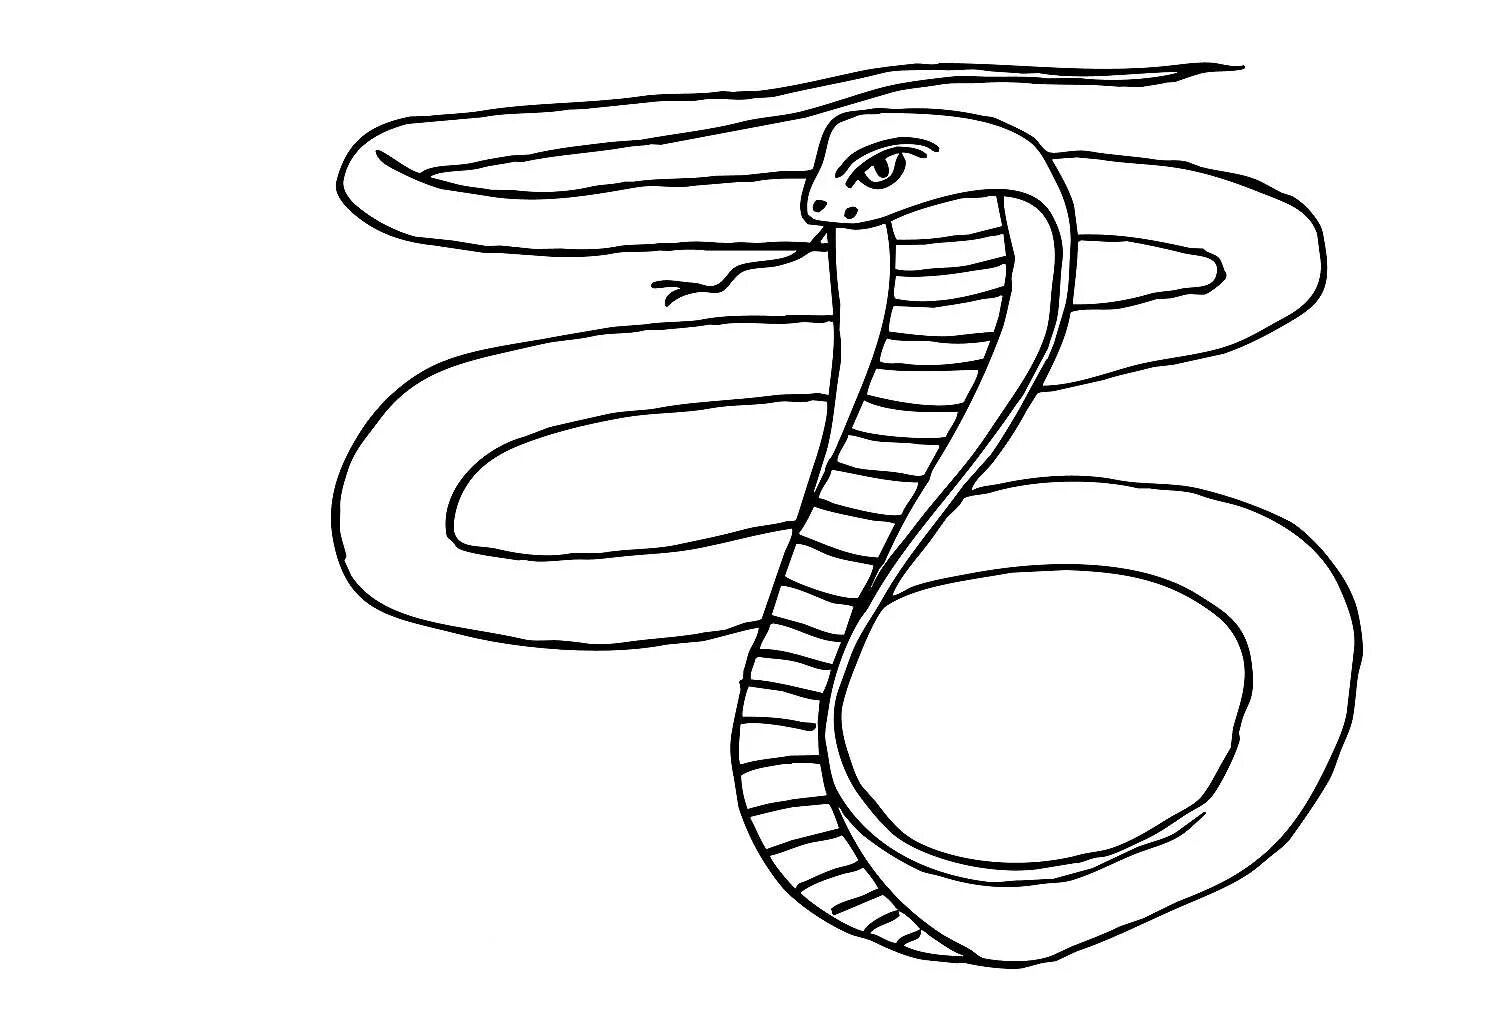 Раскраска змея Кобра. Степная гадюка раскраска. Раскраска змеи для детей. Змея раскраска для детей. Раскраска змей для детей